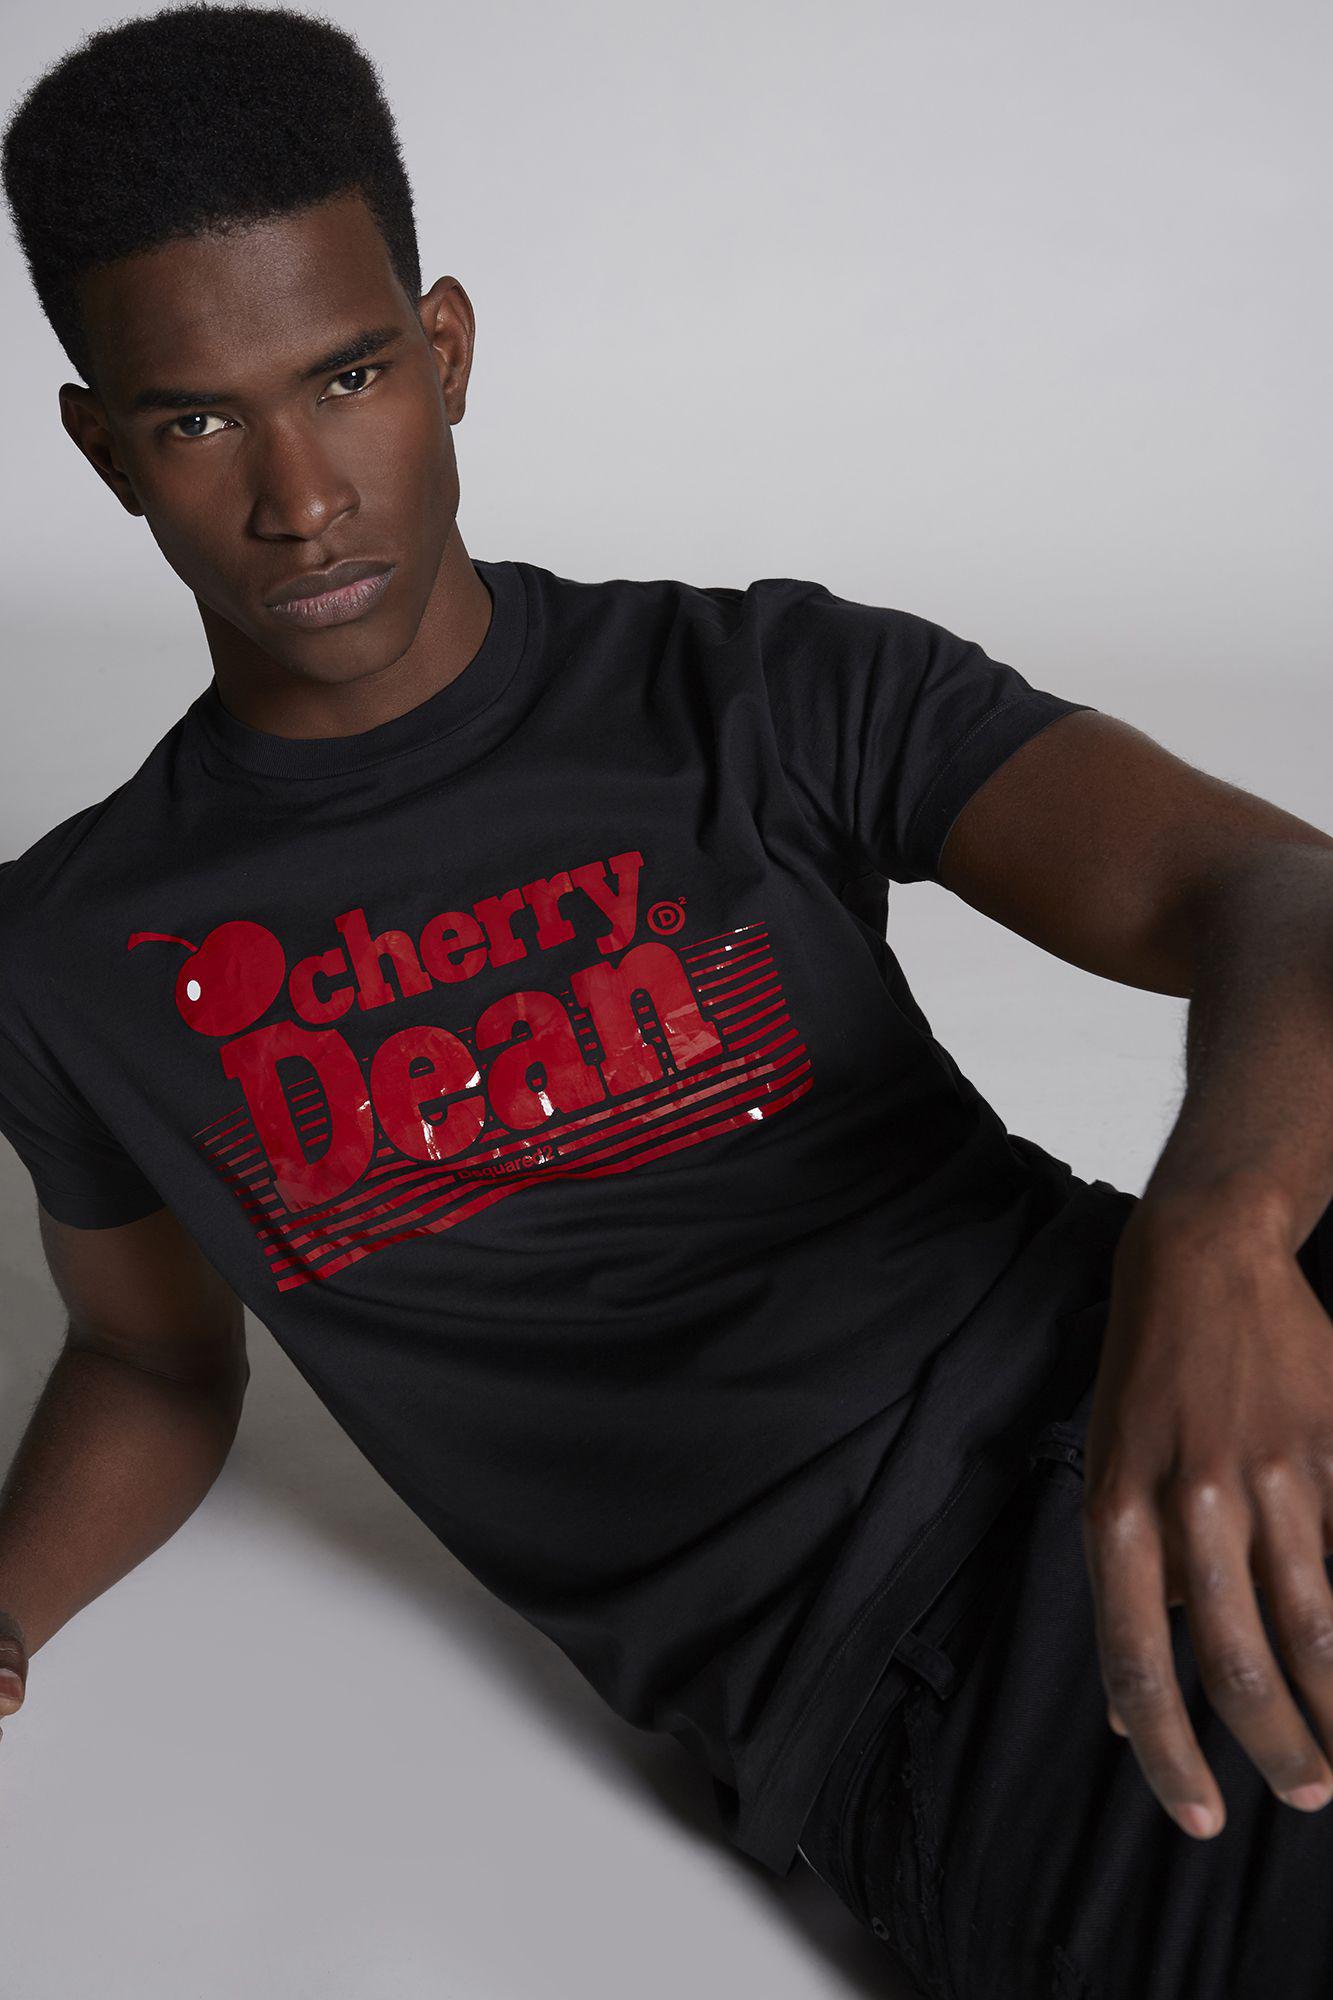 cherry dean t shirt